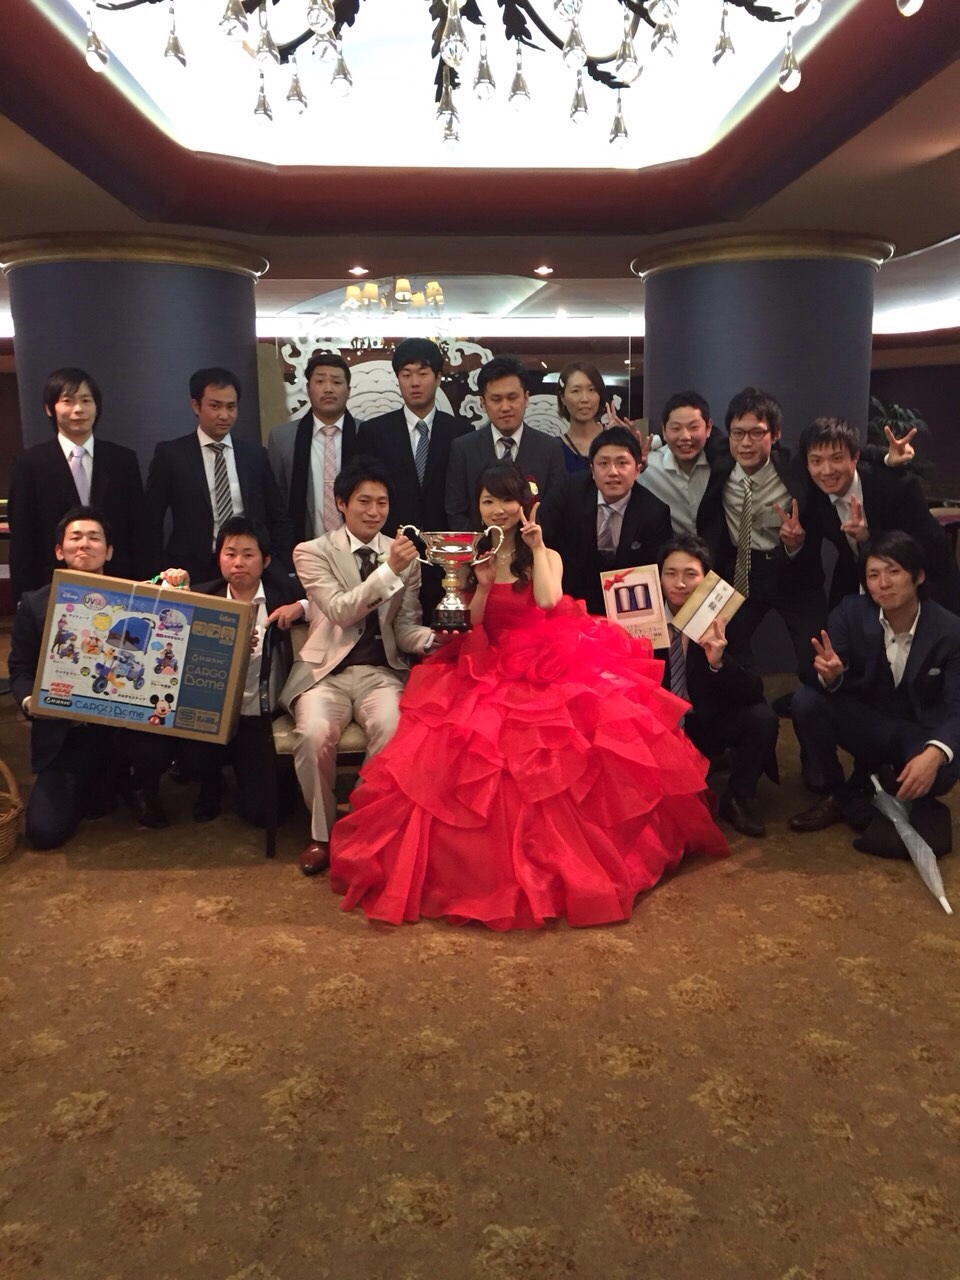 2015年12月13日 中野夫妻結婚式二次会